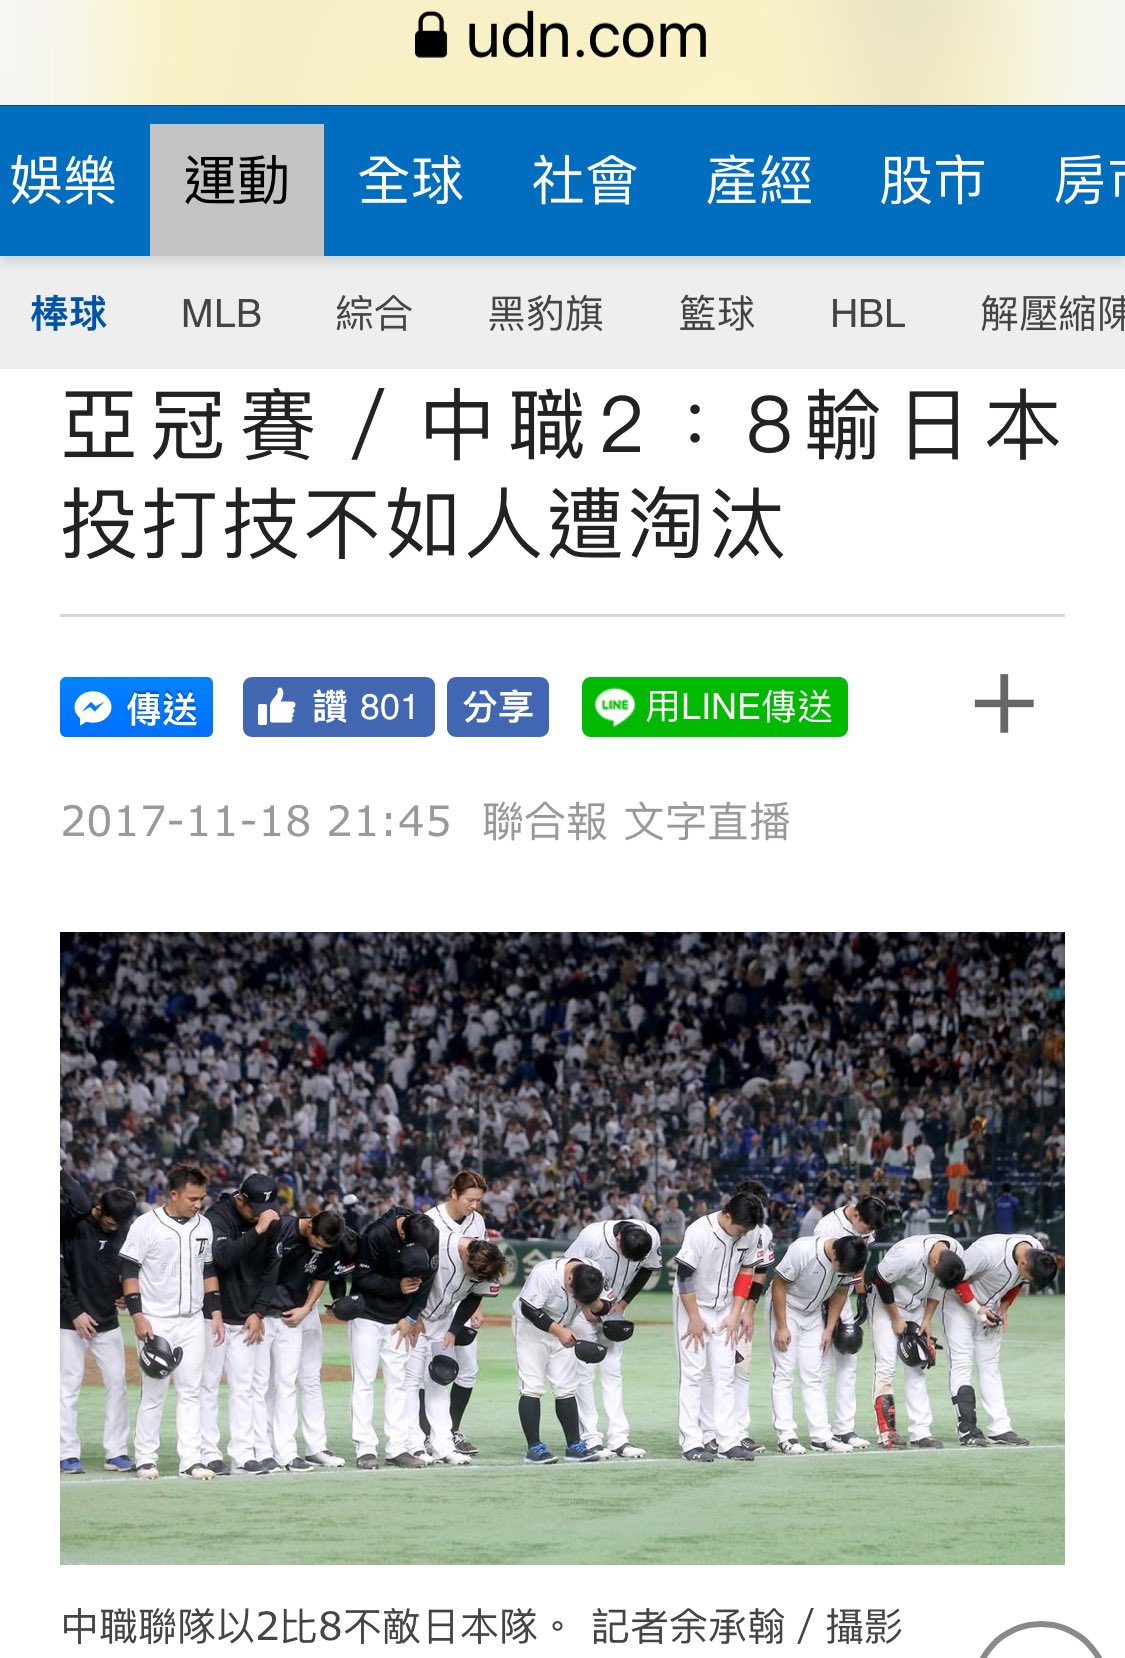 Chris 台湾人 Twitter પર 今日 17アジアプロ野球チャンピオンシップ 日本侍が台湾に勝ったね 13年wbc日台の感動な試合に今もずっと心に刻んで 沁みます 台湾人にとって 台湾は勝っても 日本は勝っても